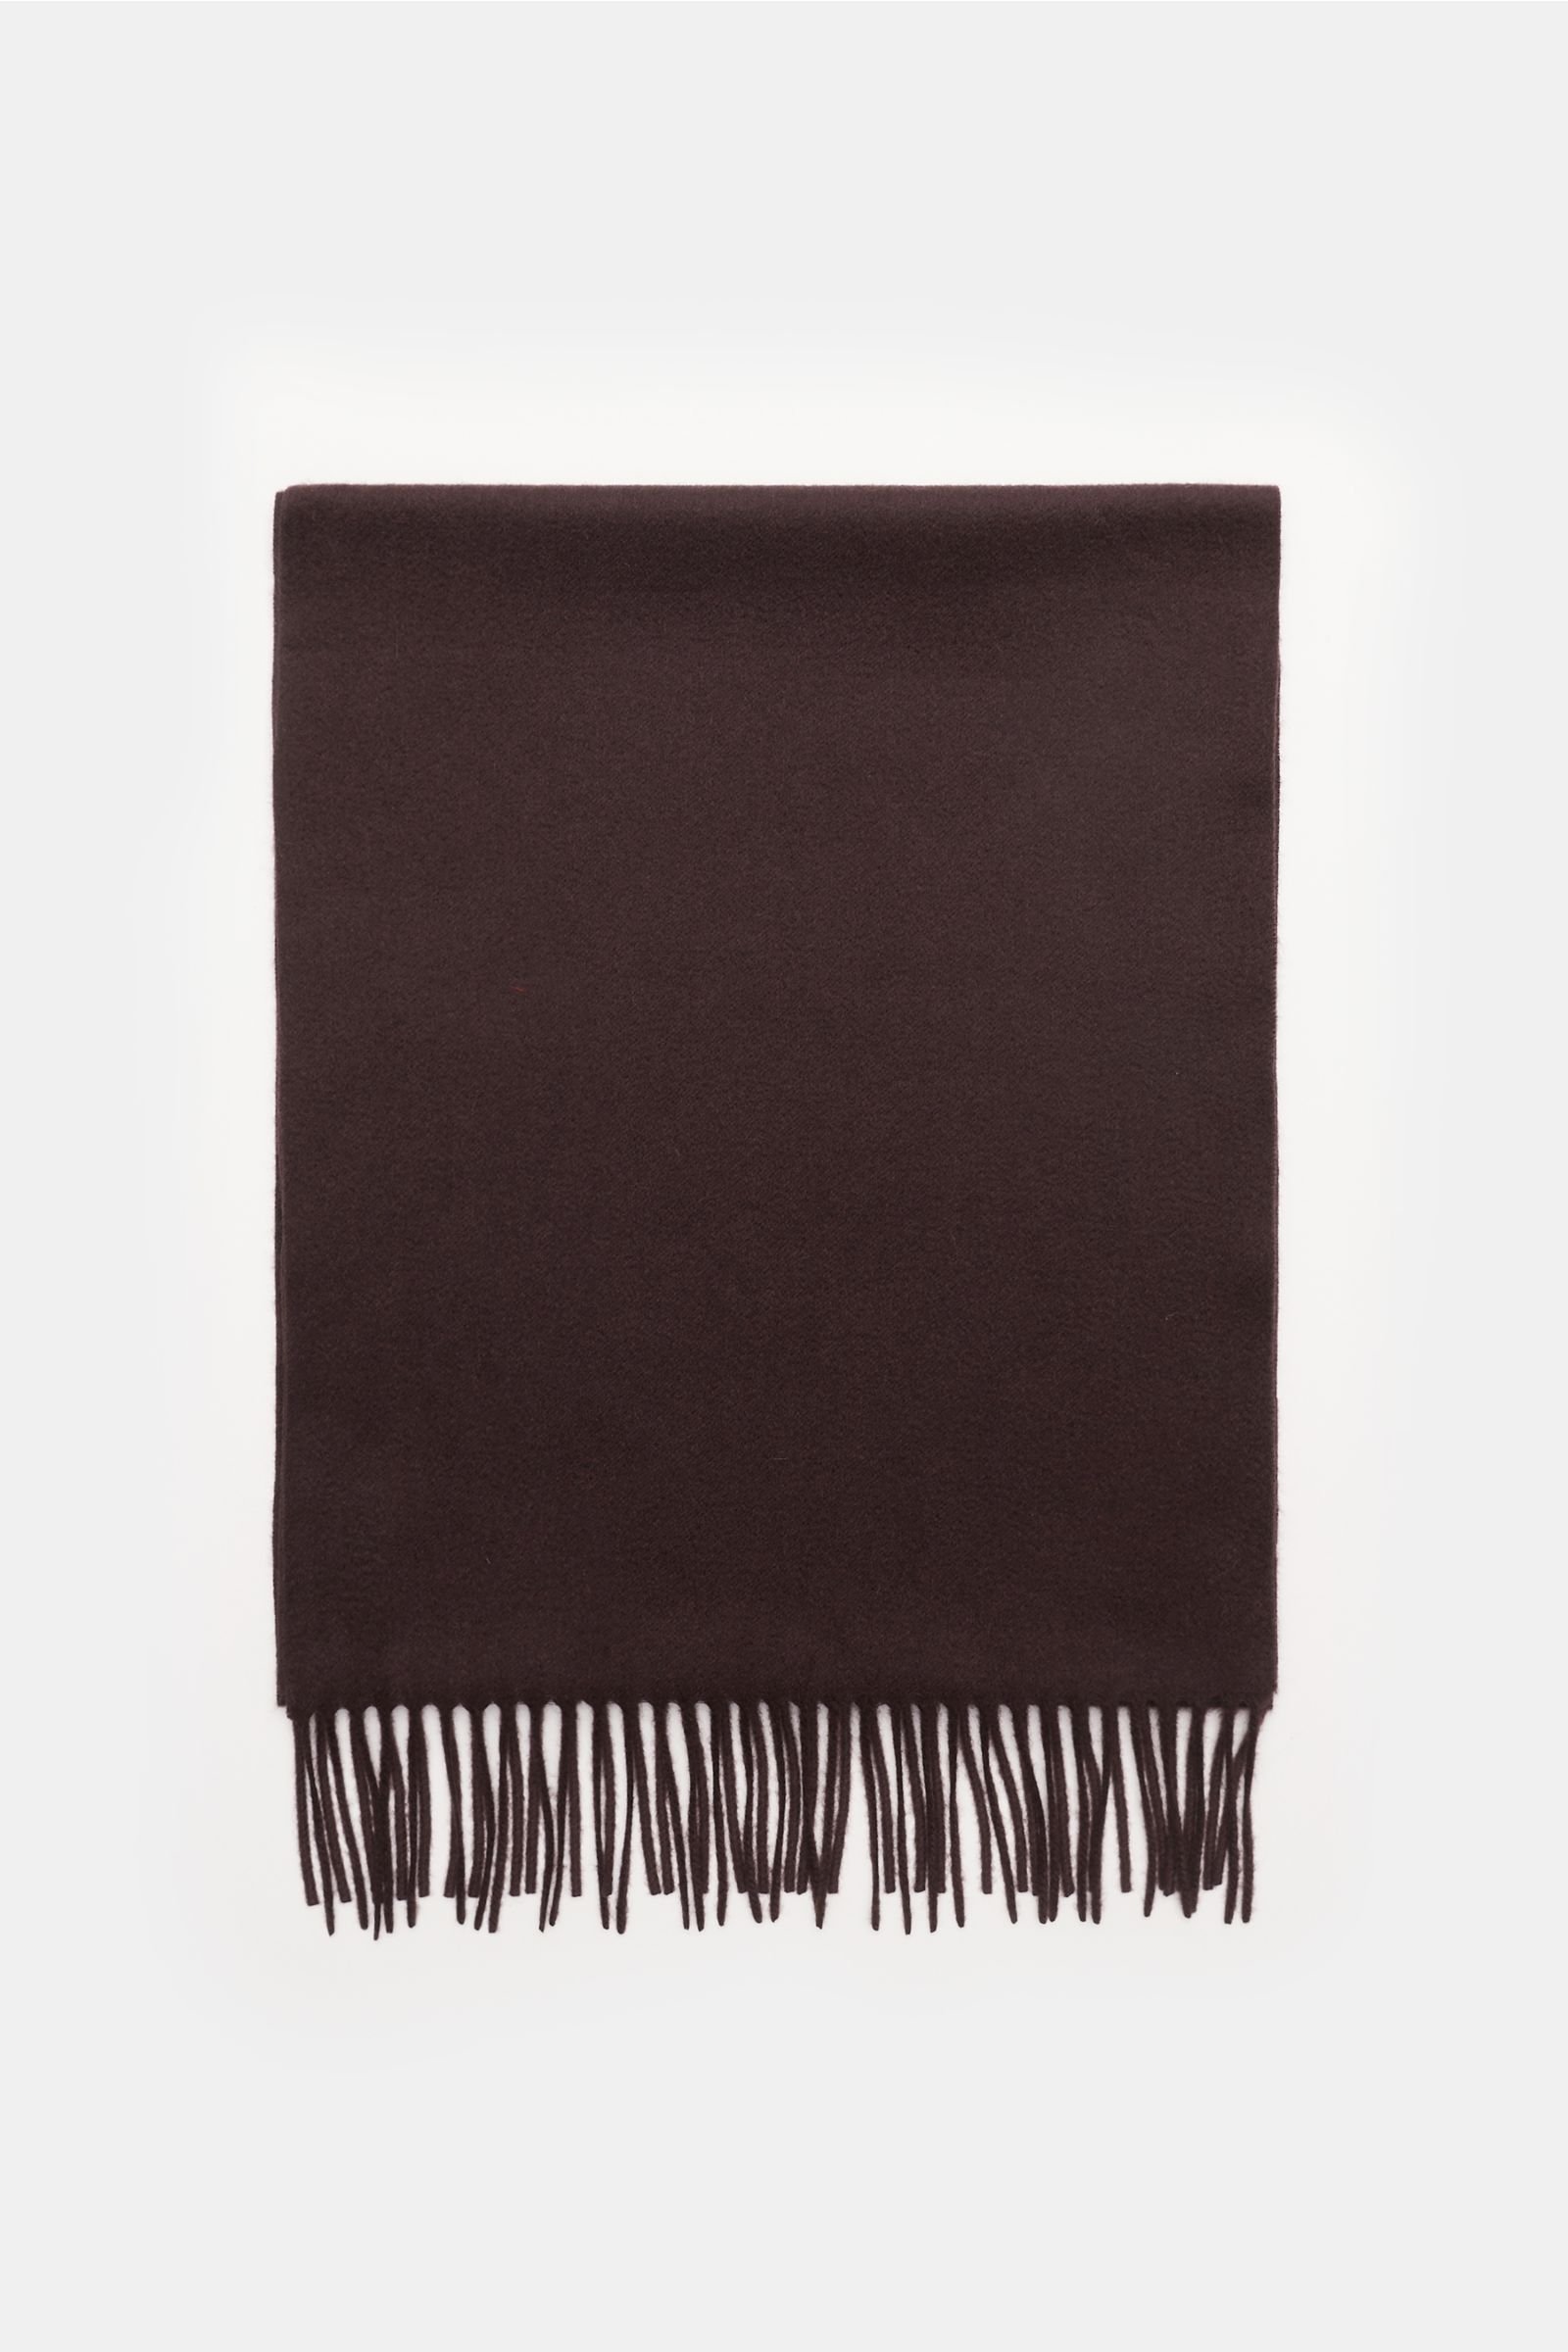 Cashmere scarf dark brown